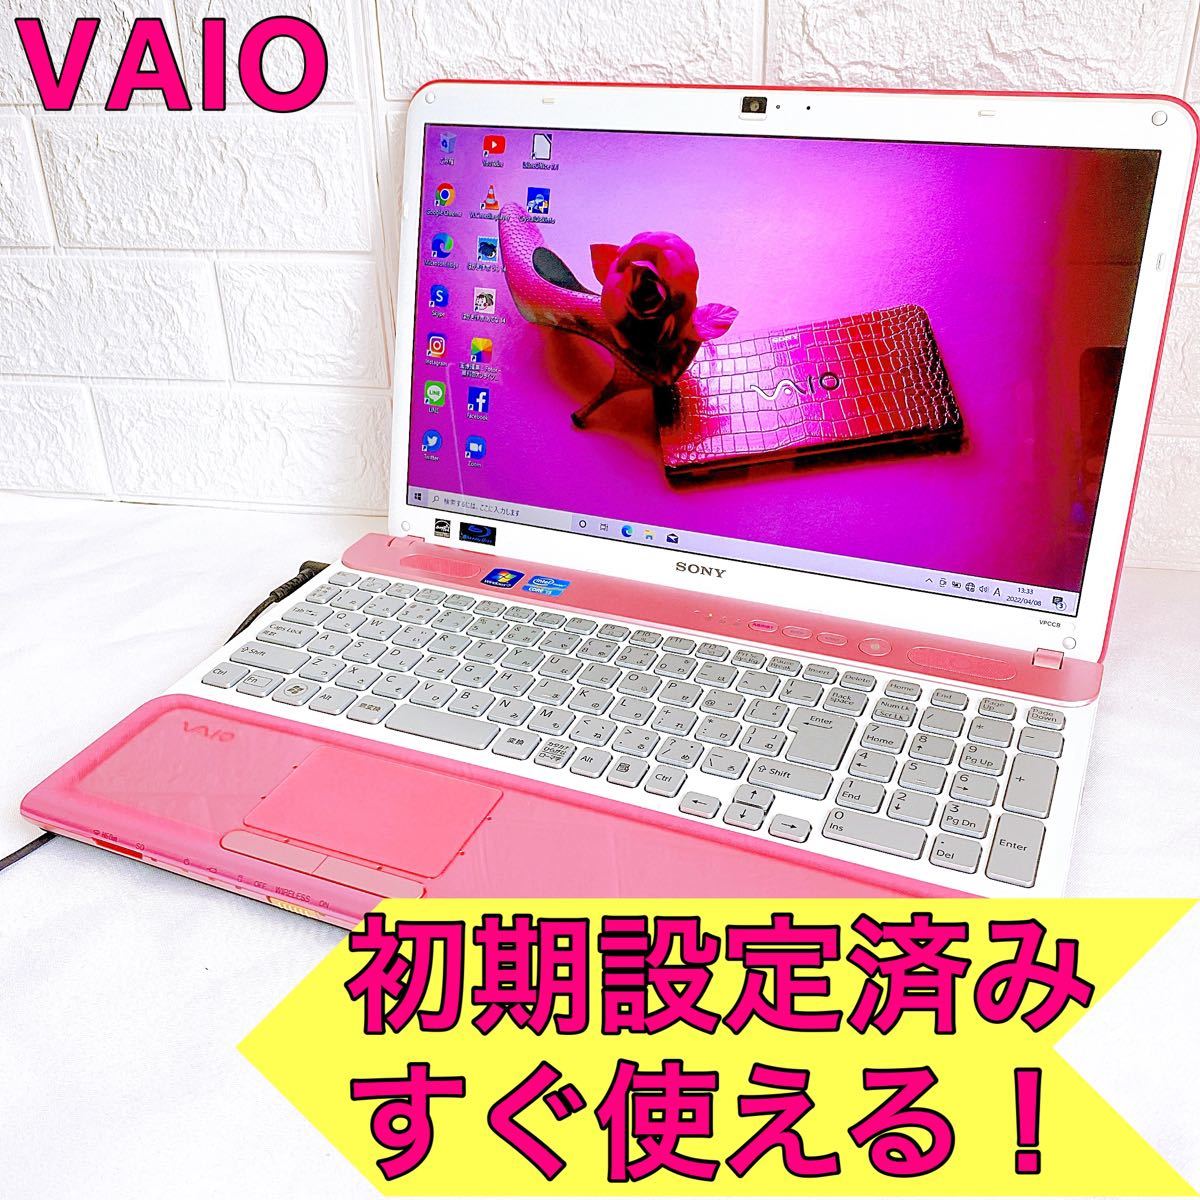 人気top 可愛いピンク Vaio Corei5 大容量 Webカメラ付 ブルーレイ搭載 すぐ使えるノートパソコン 仕事や趣味におススメ Windowsノート Reachahand Org